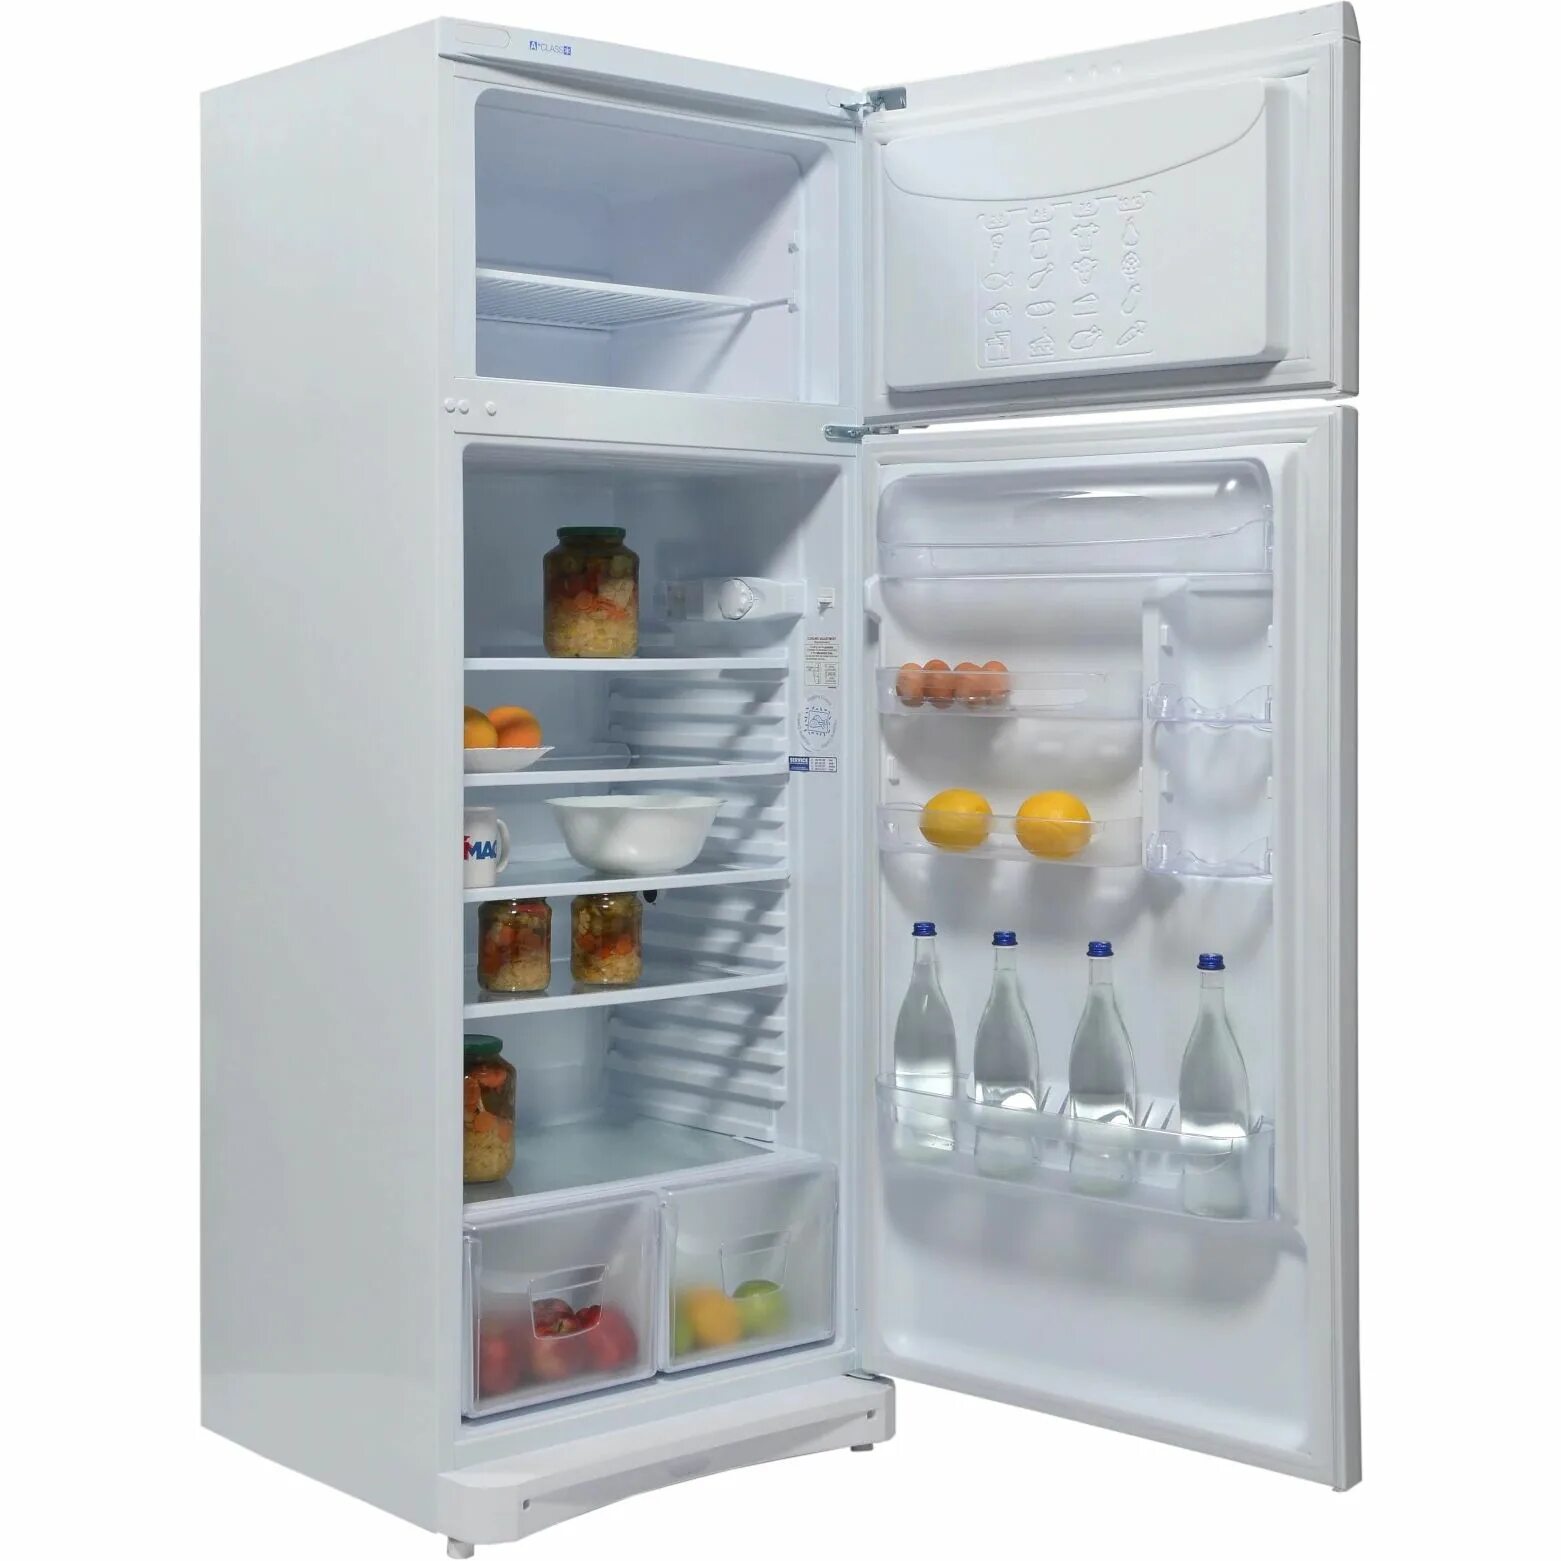 Холодильник Индезит r3300 WEU. Индезит 101 холодильник. Холодильник двухмоторный Индезит. Индезит холодильники недорого